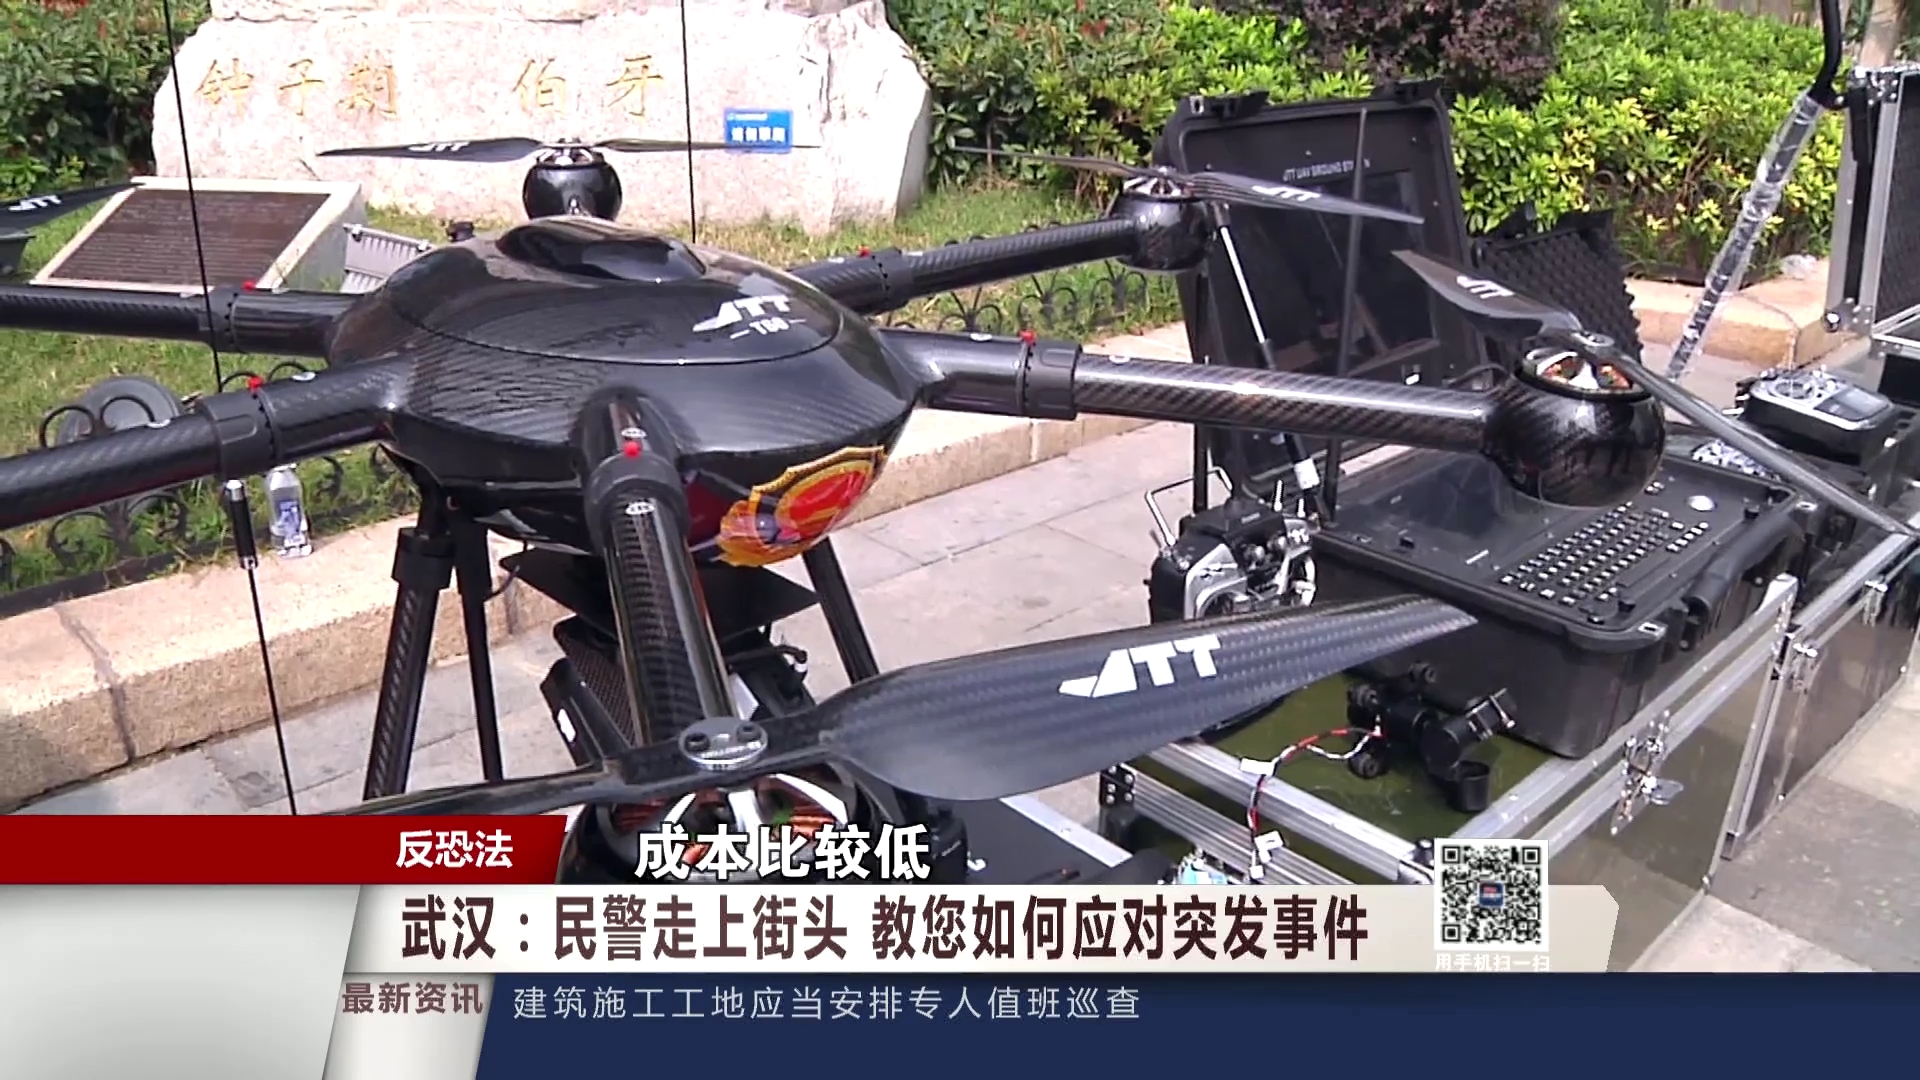 JTT - 武汉《反恐法》宣传周活动新闻报道